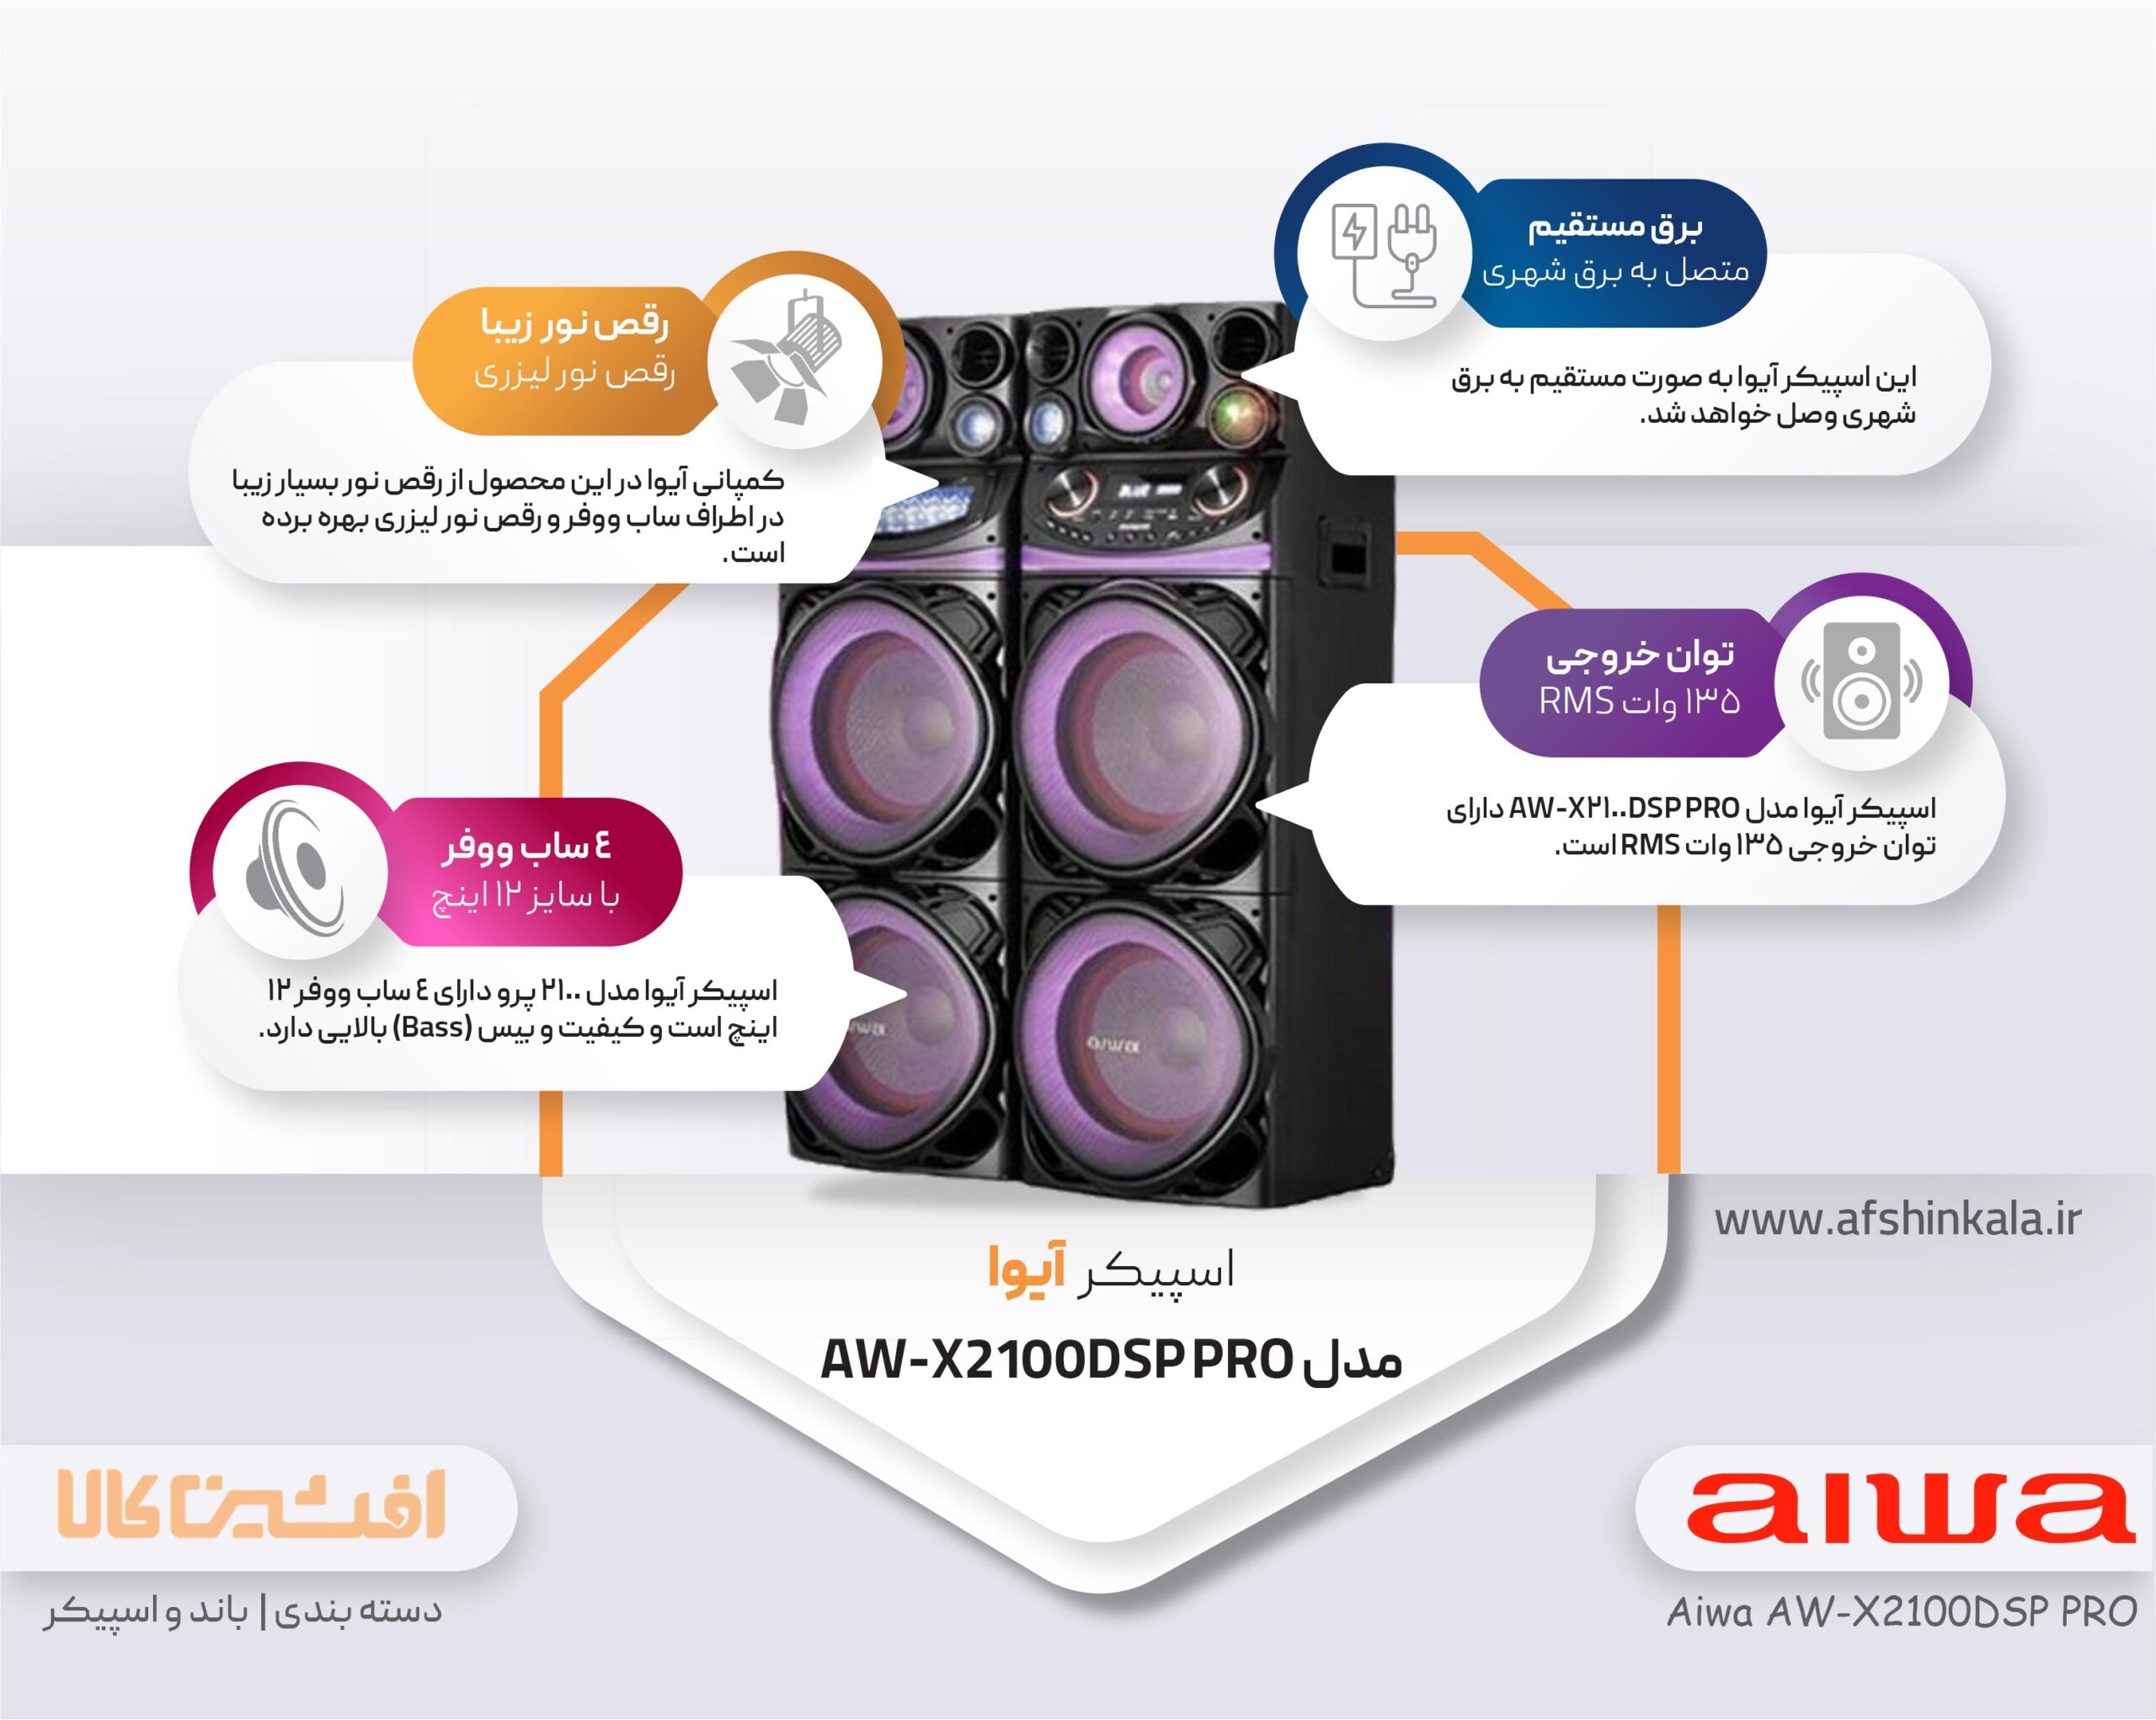 مشخصات اسپیکر آیوا مدل AW-X2100DSP PRO | افشین کالا